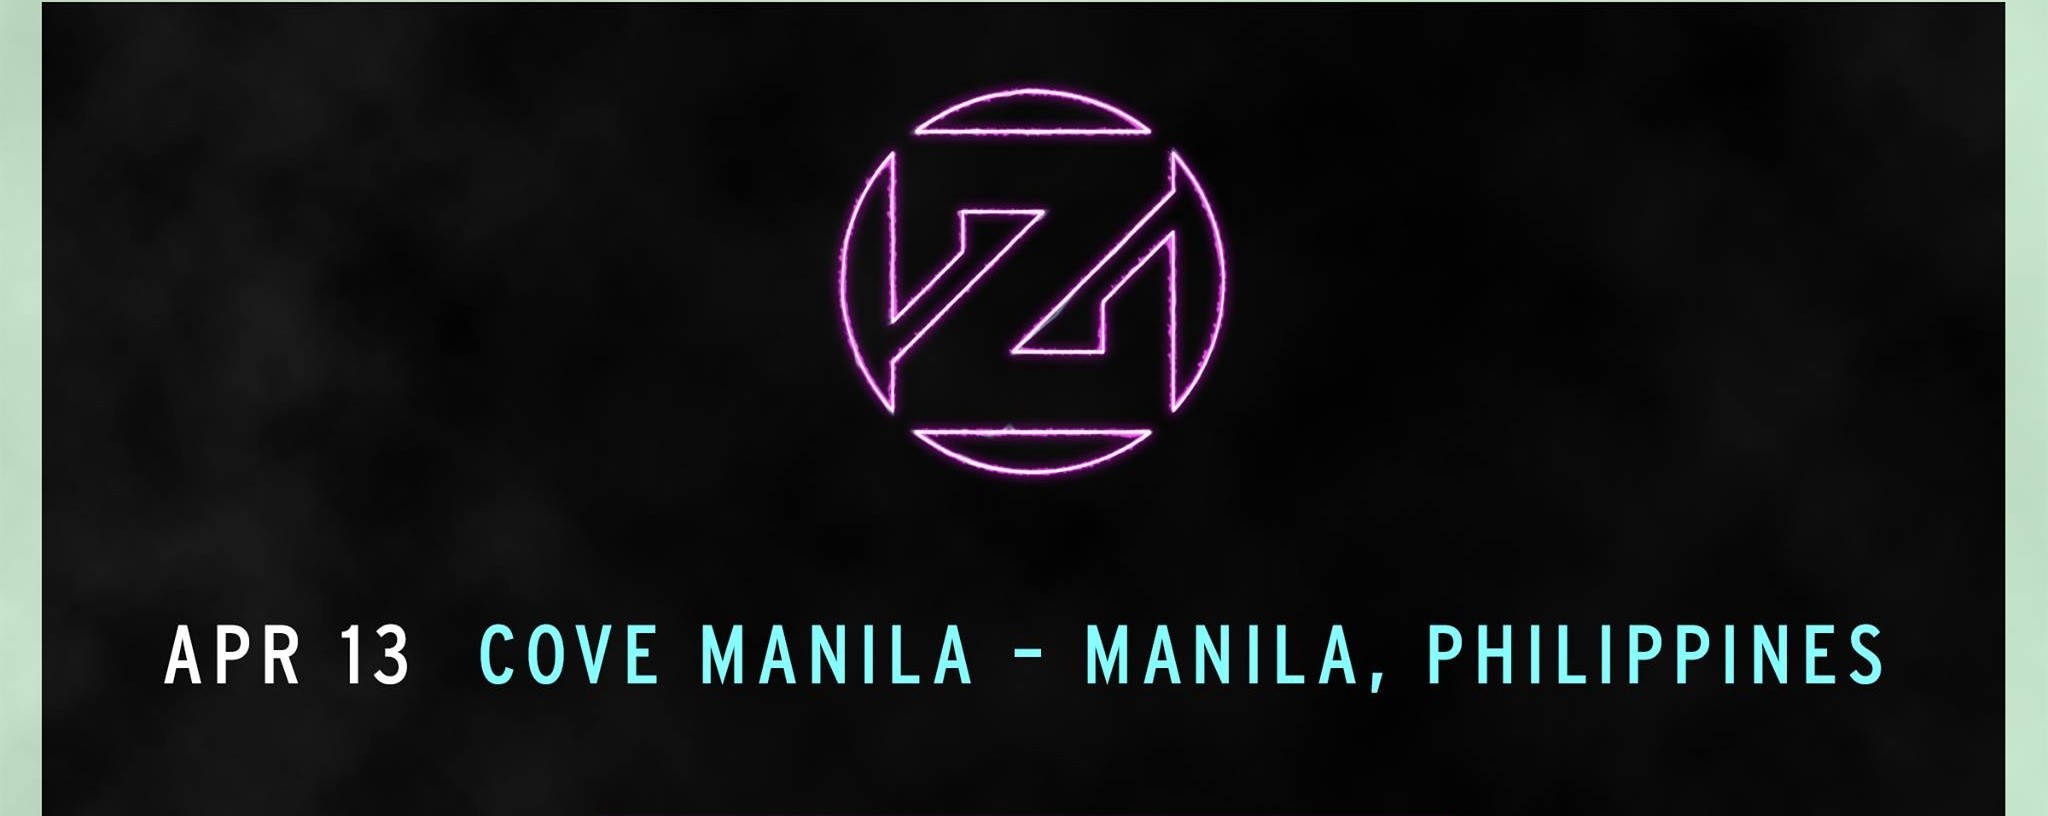 Zedd - Asia Club Tour - Manila, Philippines